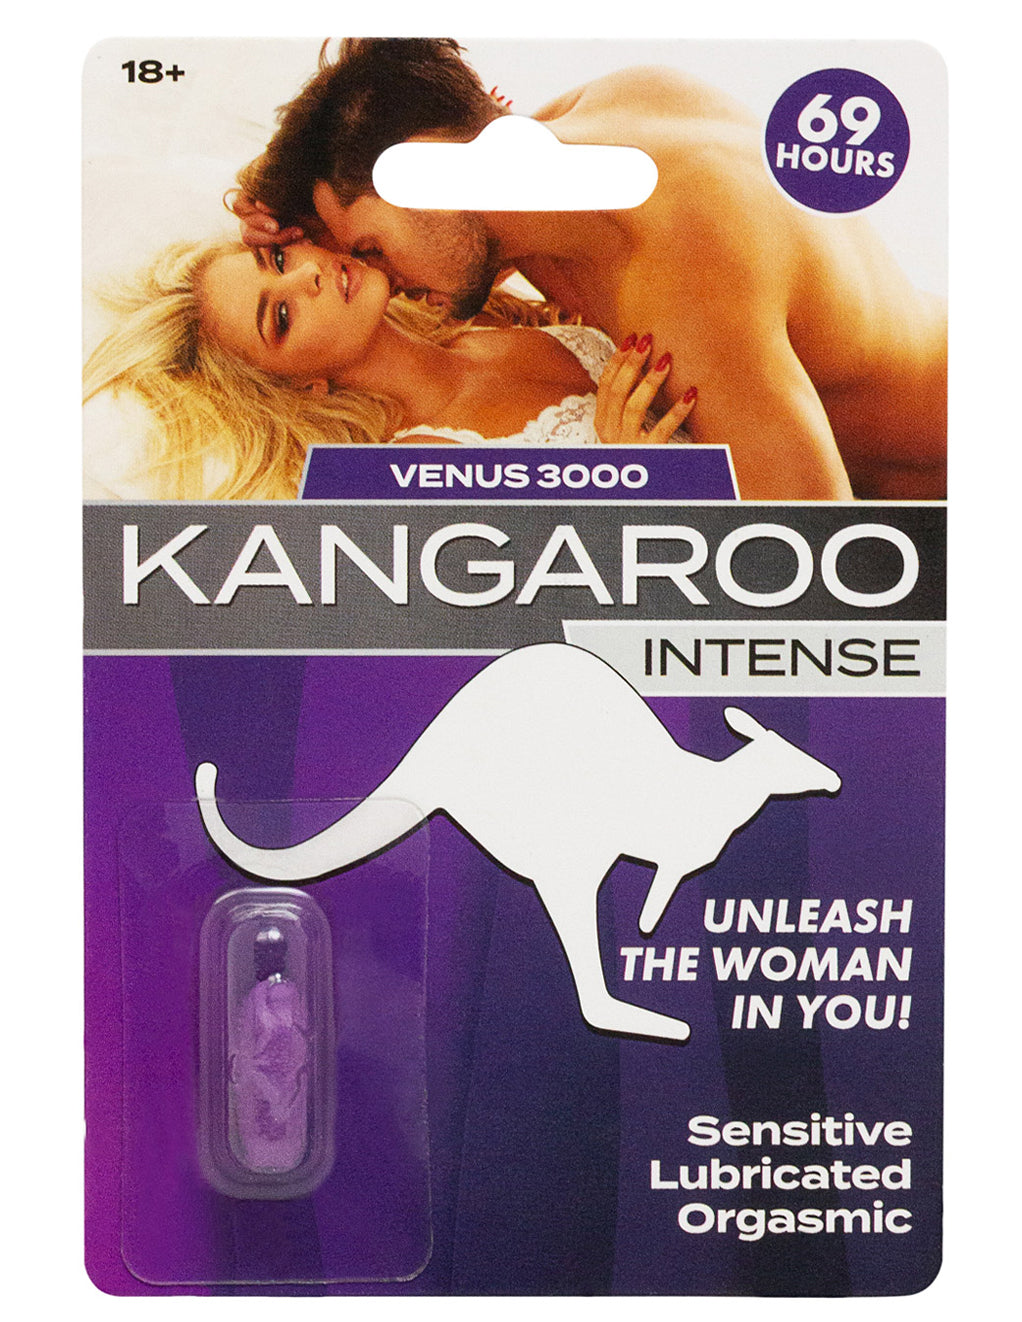 kangaroo vaginas mature naughty wives ireland Sex Images Hq